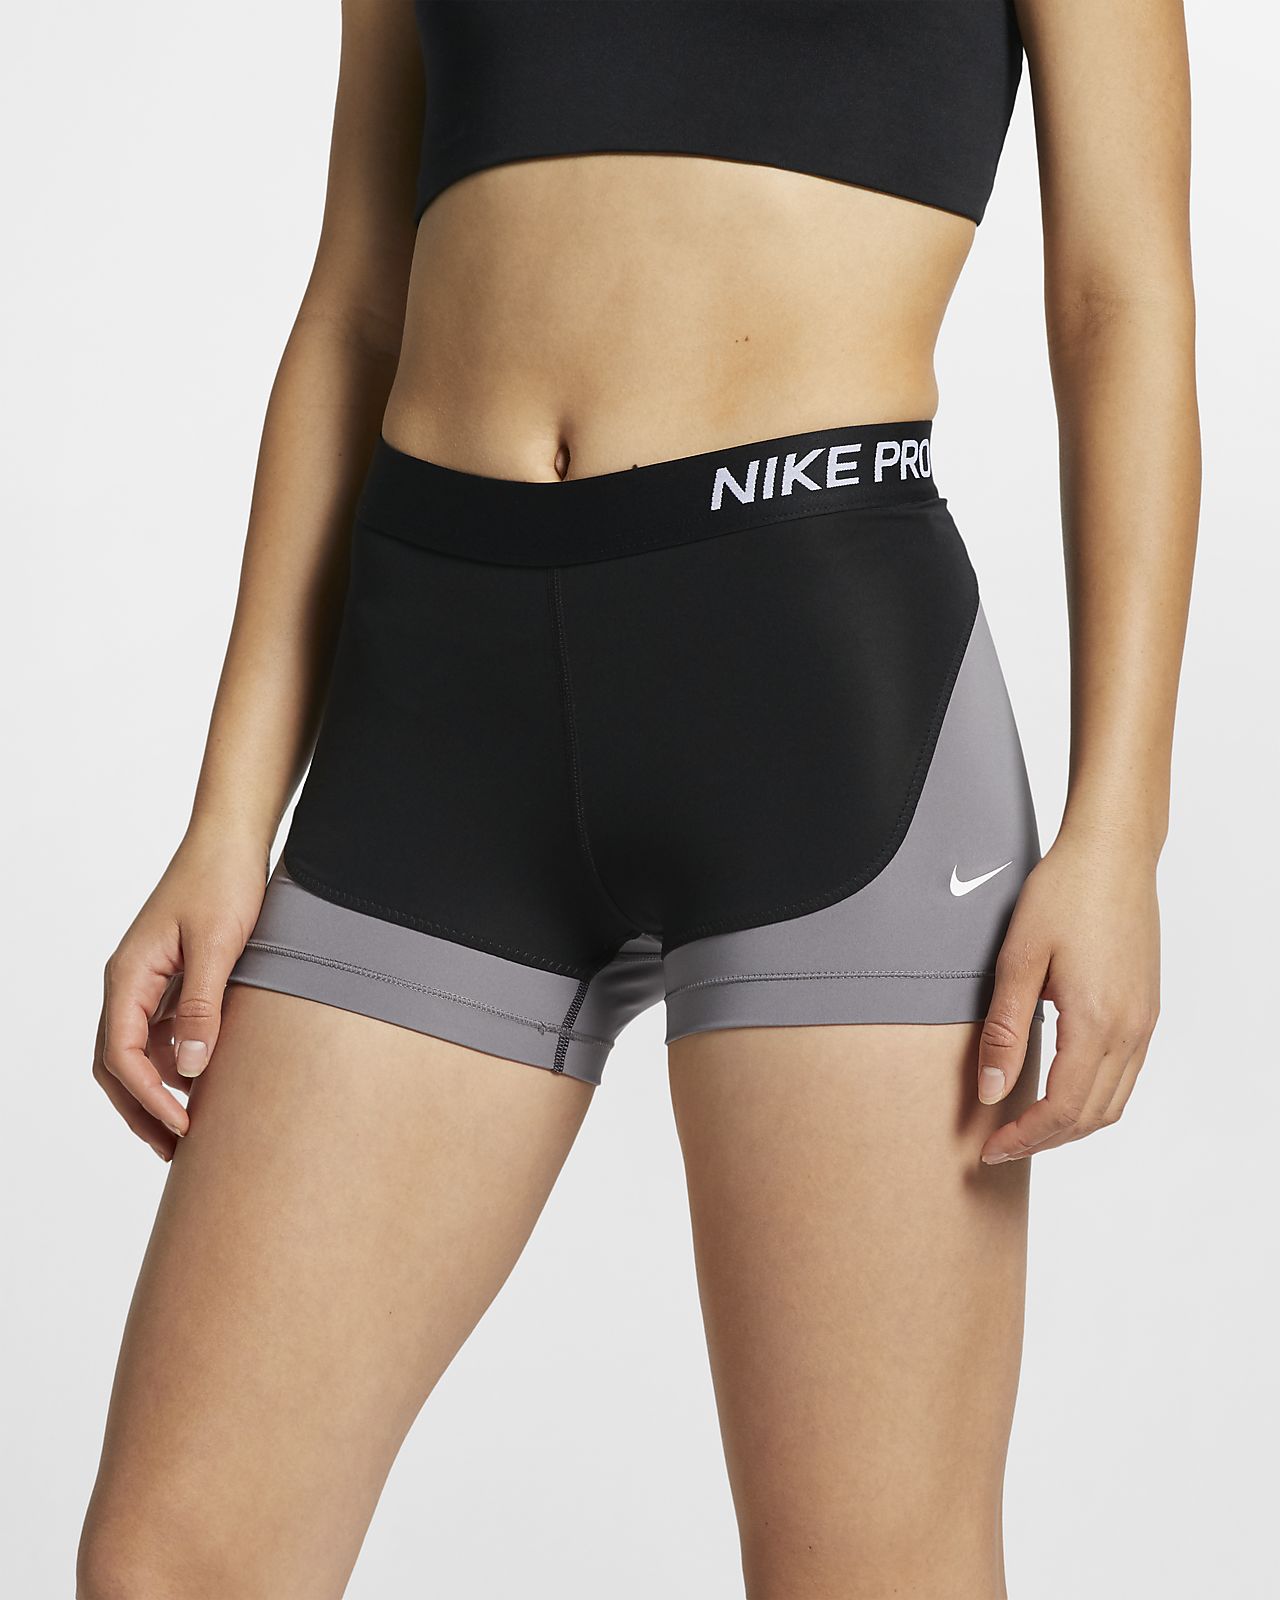 nike pro shorts women's canada